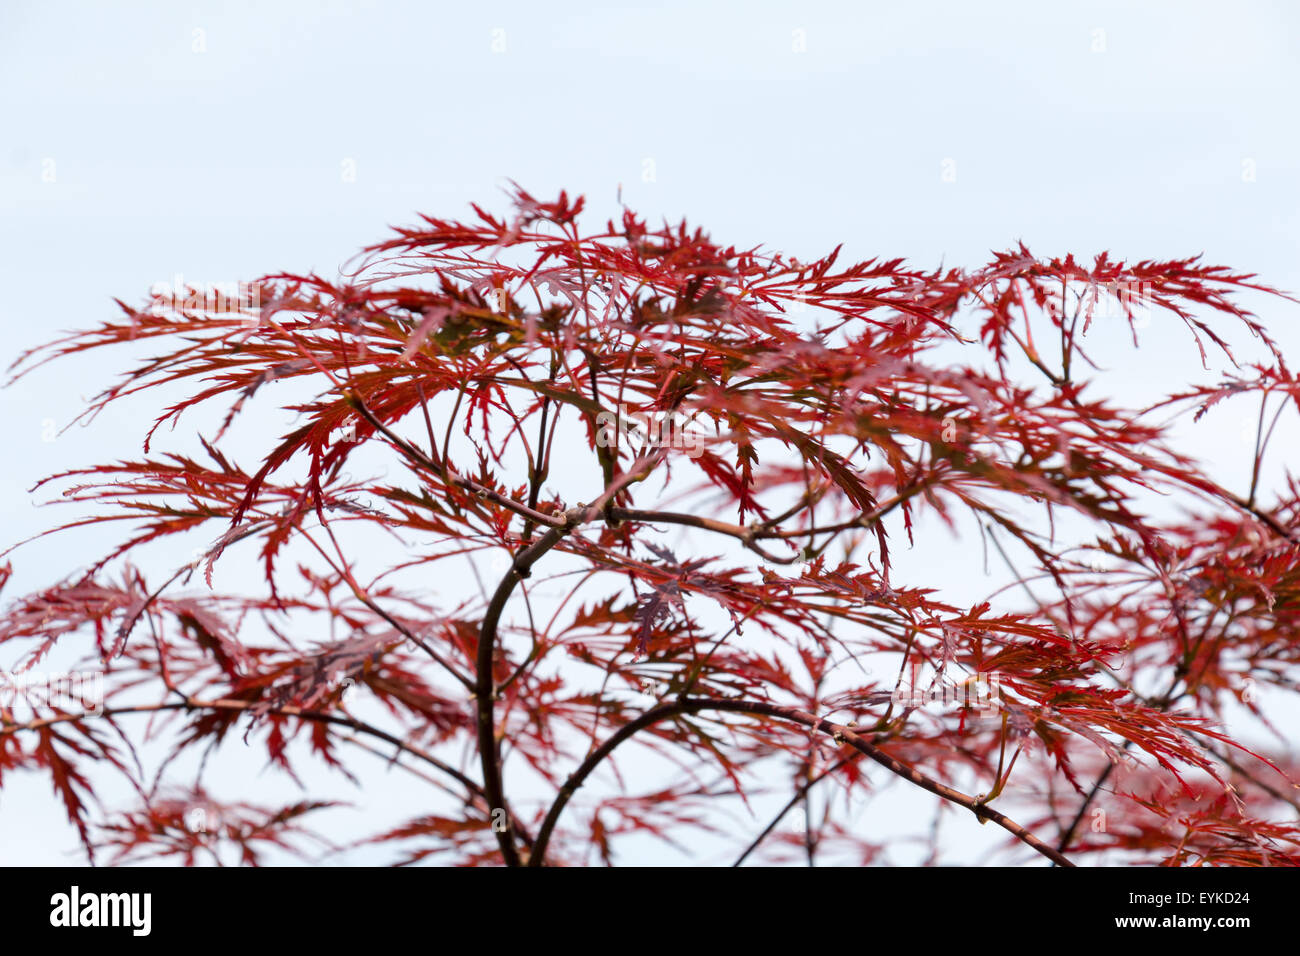 Weinrote Blätter des Baumes japanischer Ahorn, Acer Palmatum Dissectum Atropurpureum, voll Stockfoto